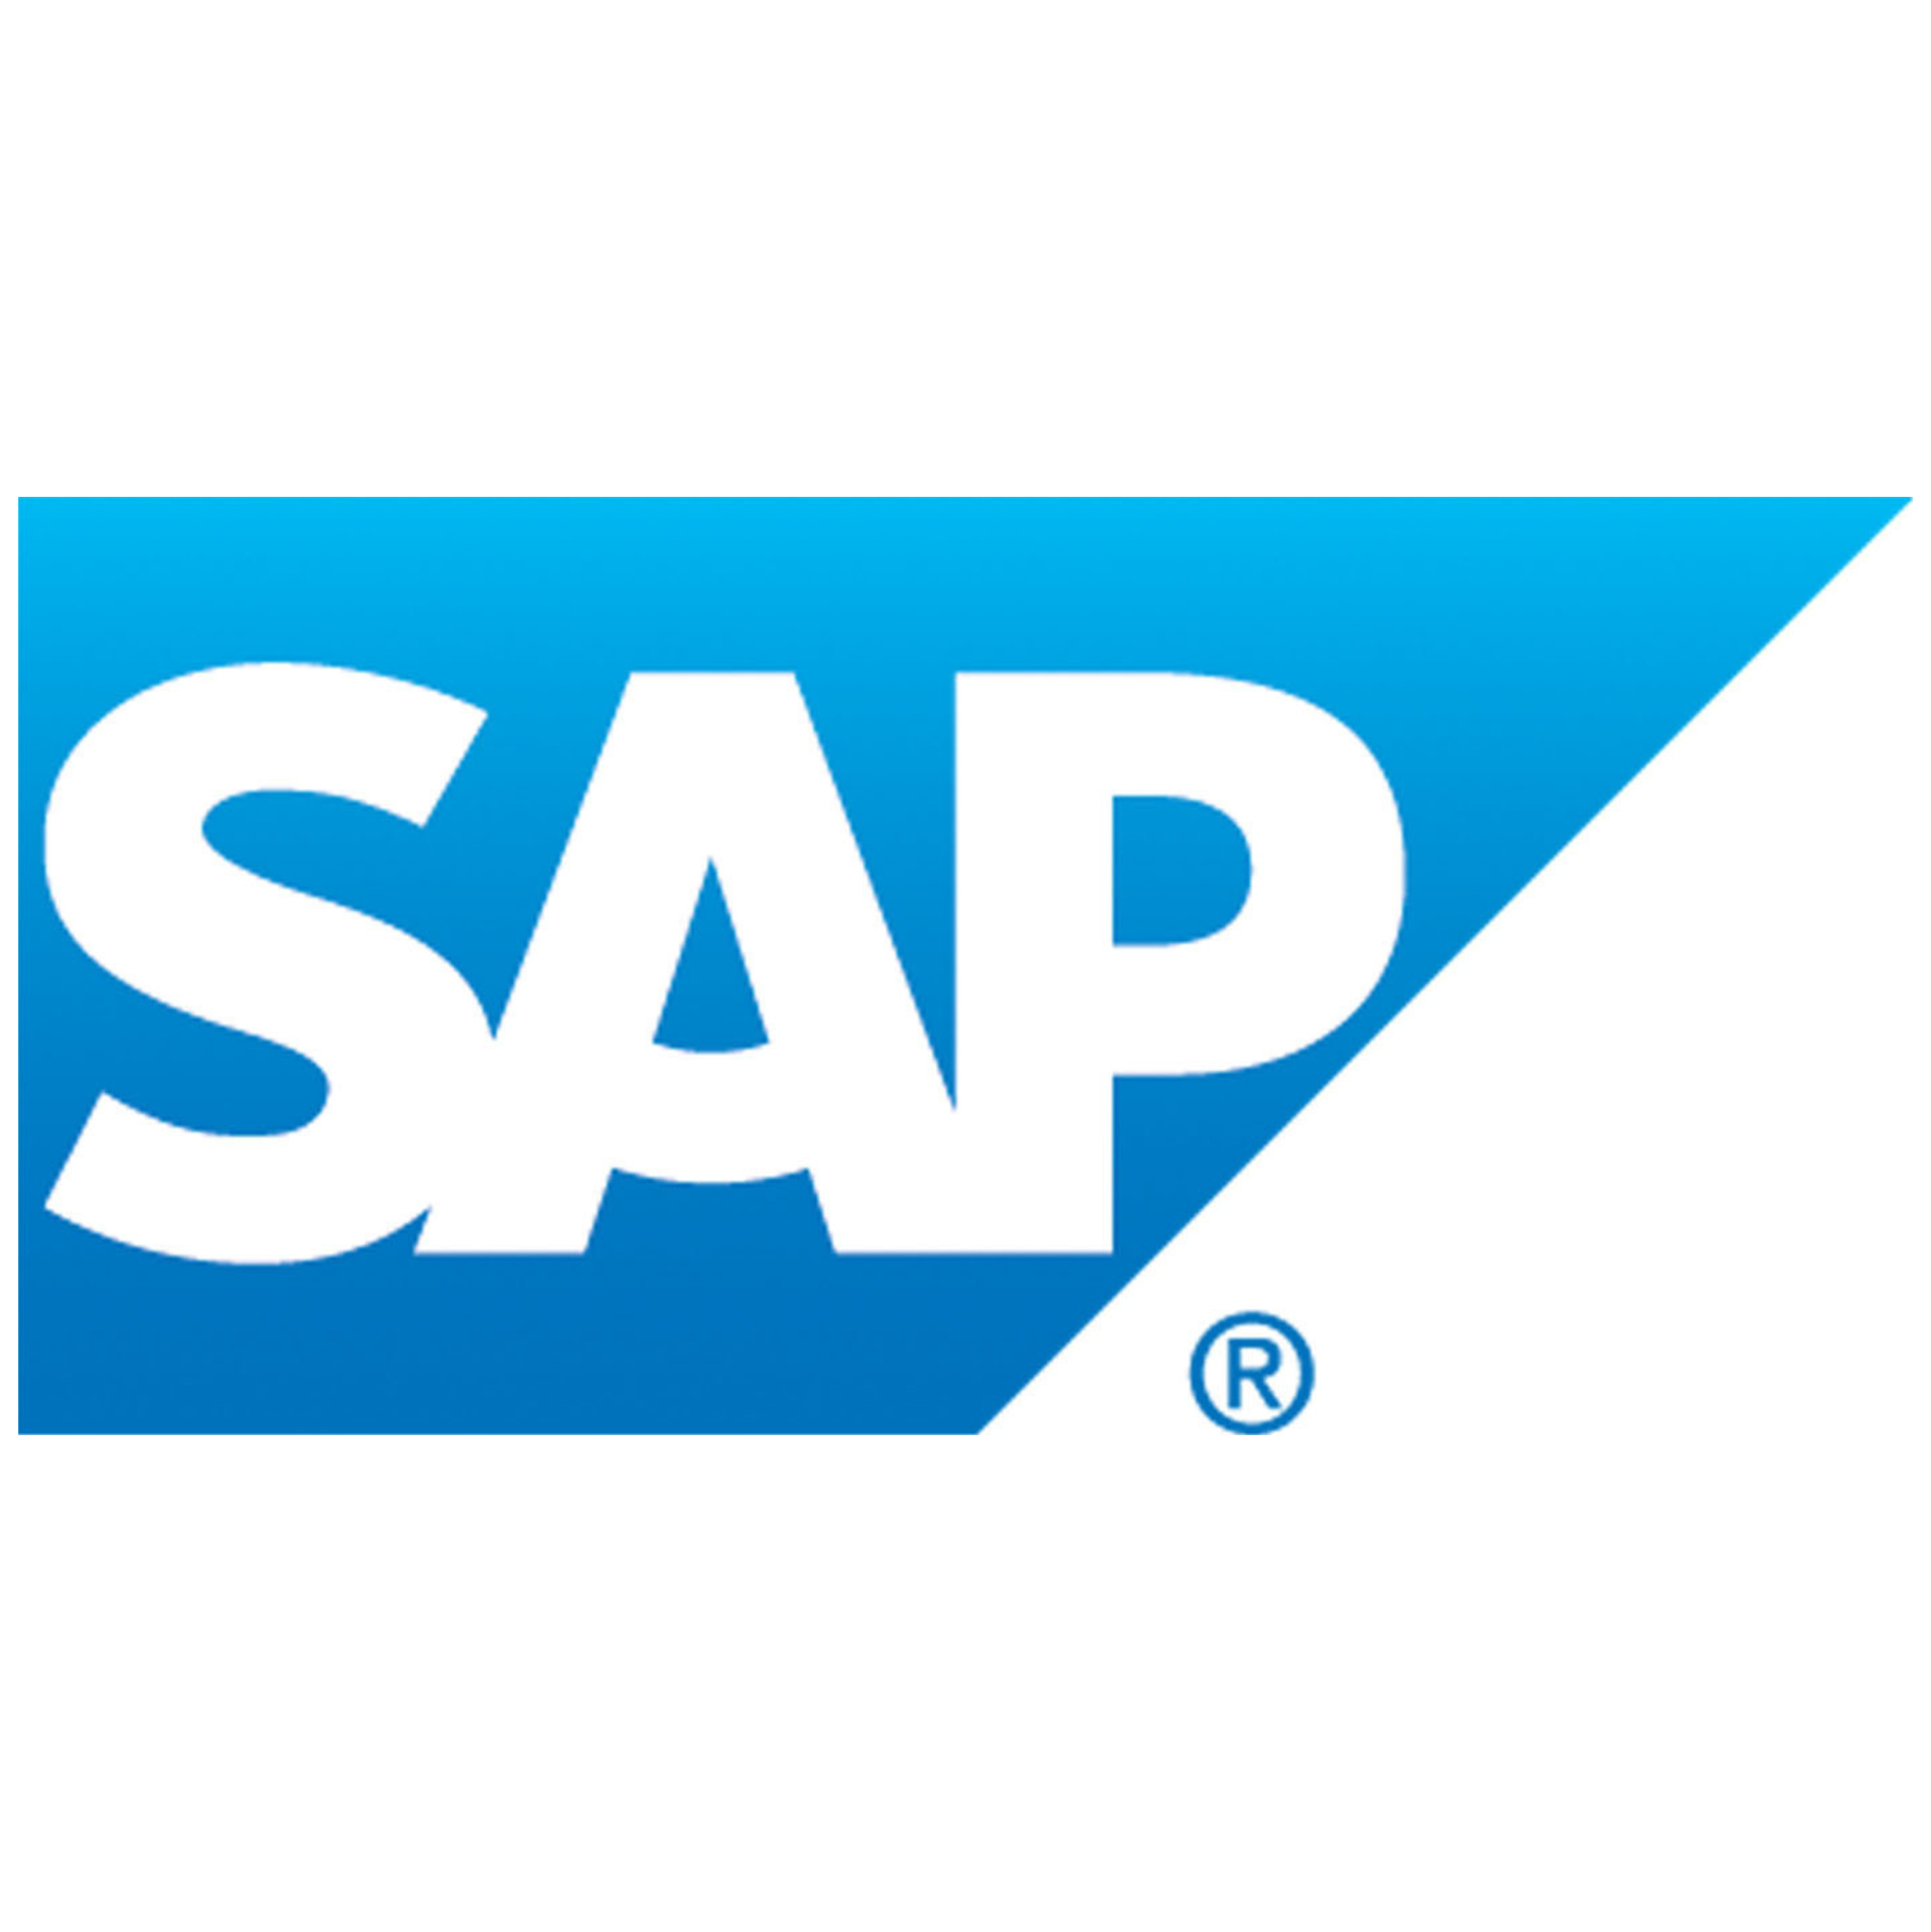 SAP Logomark